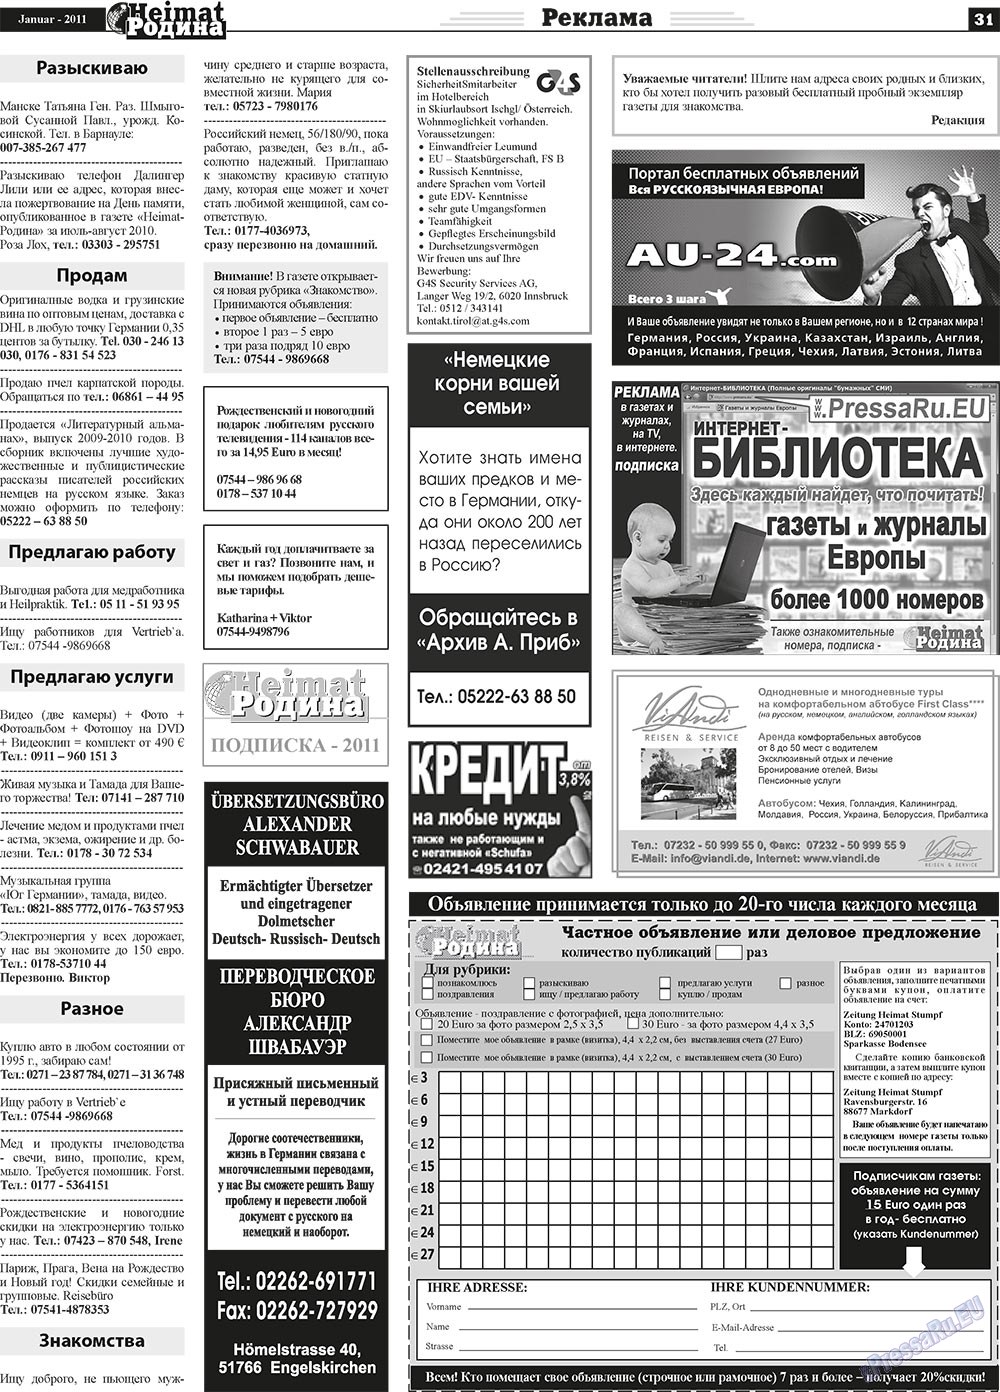 Heimat-Родина (газета). 2011 год, номер 1, стр. 31